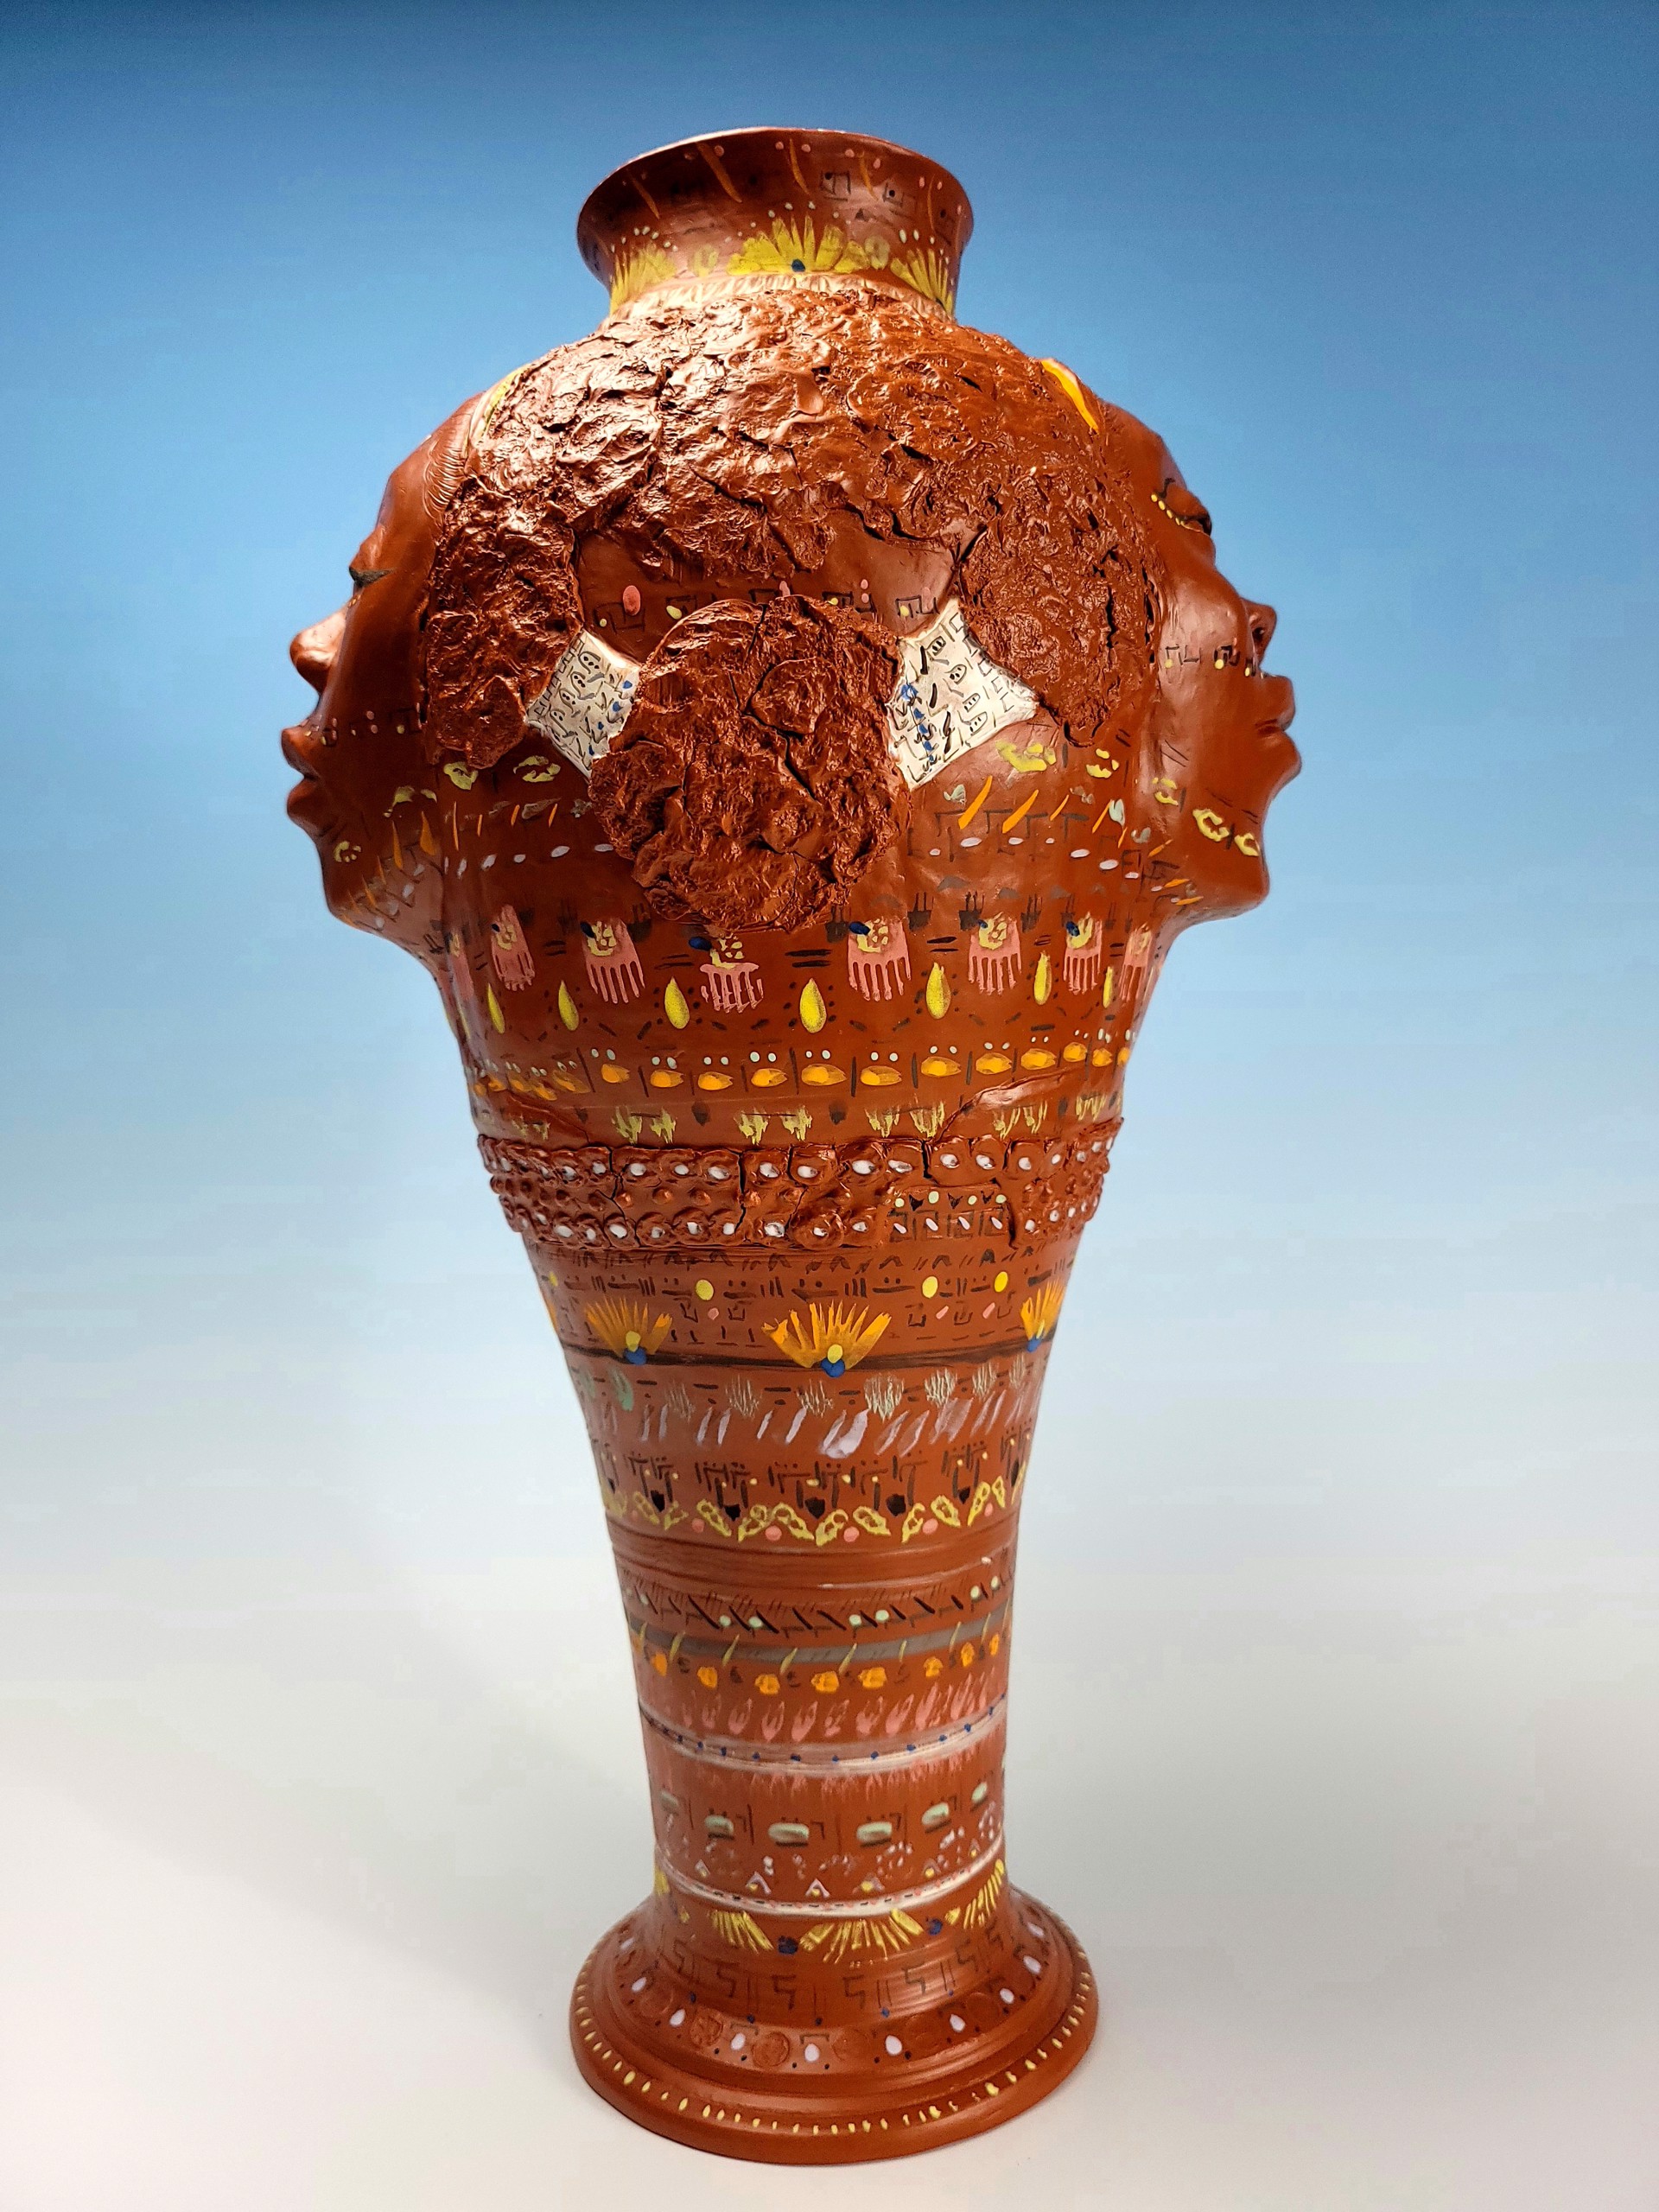 Janus Keeper Vase by Chelsea McMaster